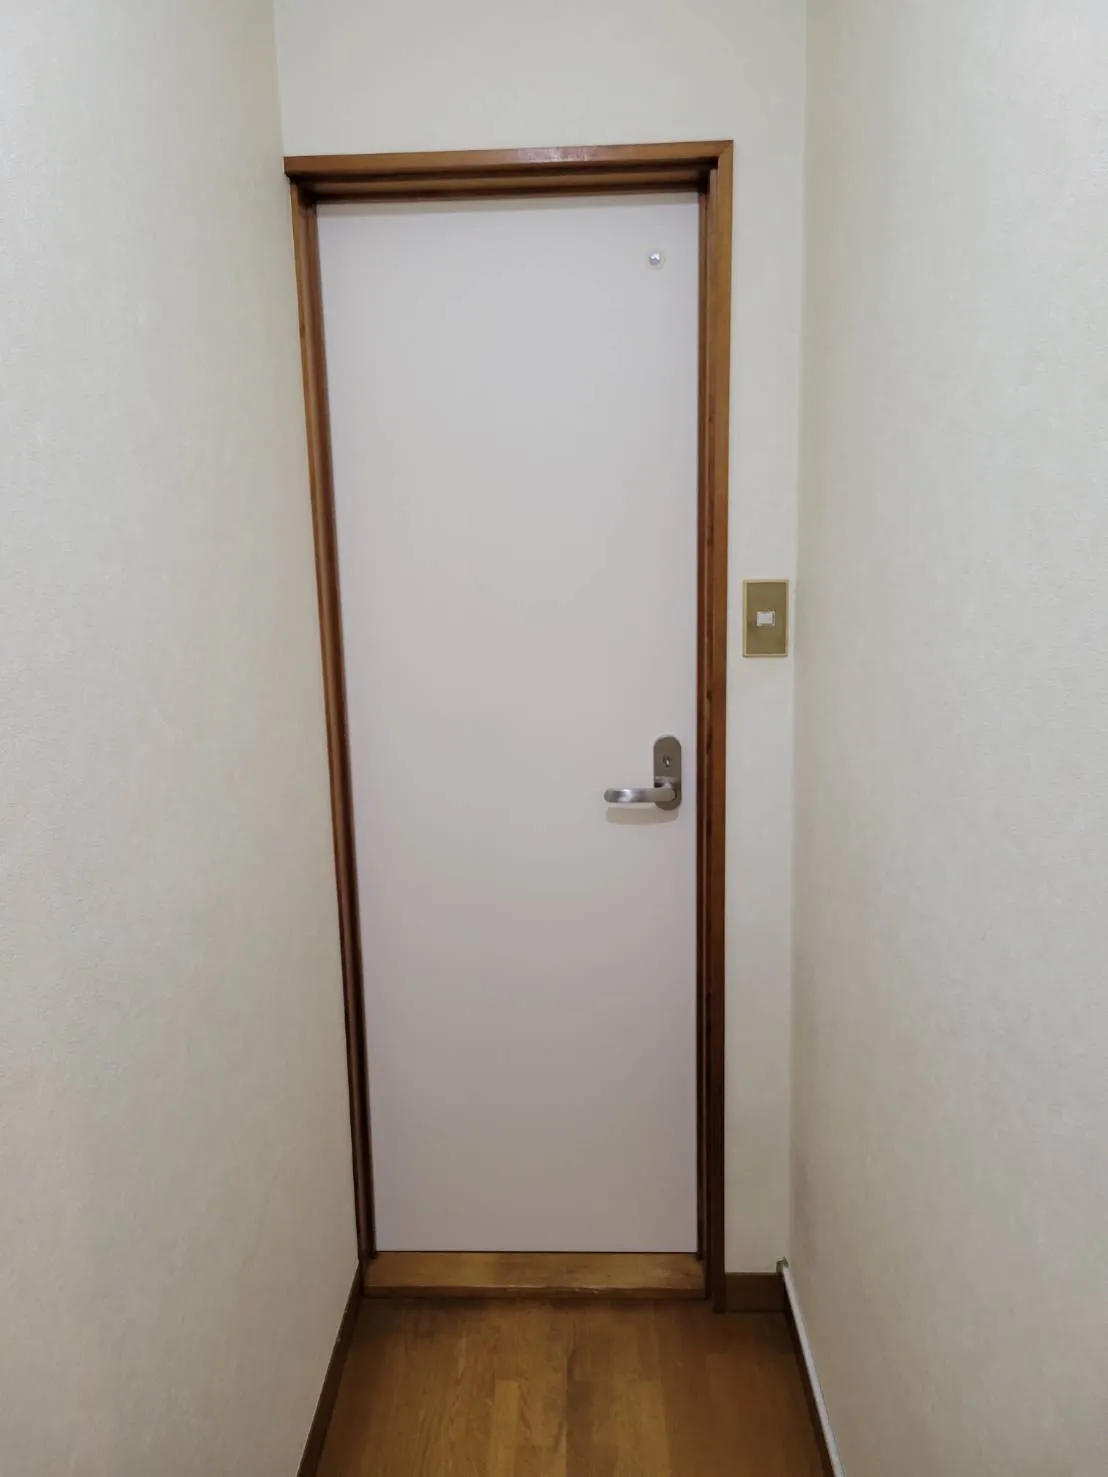 川崎市内の川崎大師近くにあるお宅様にて行っていたトイレの扉および扉製作交換故事の進捗です